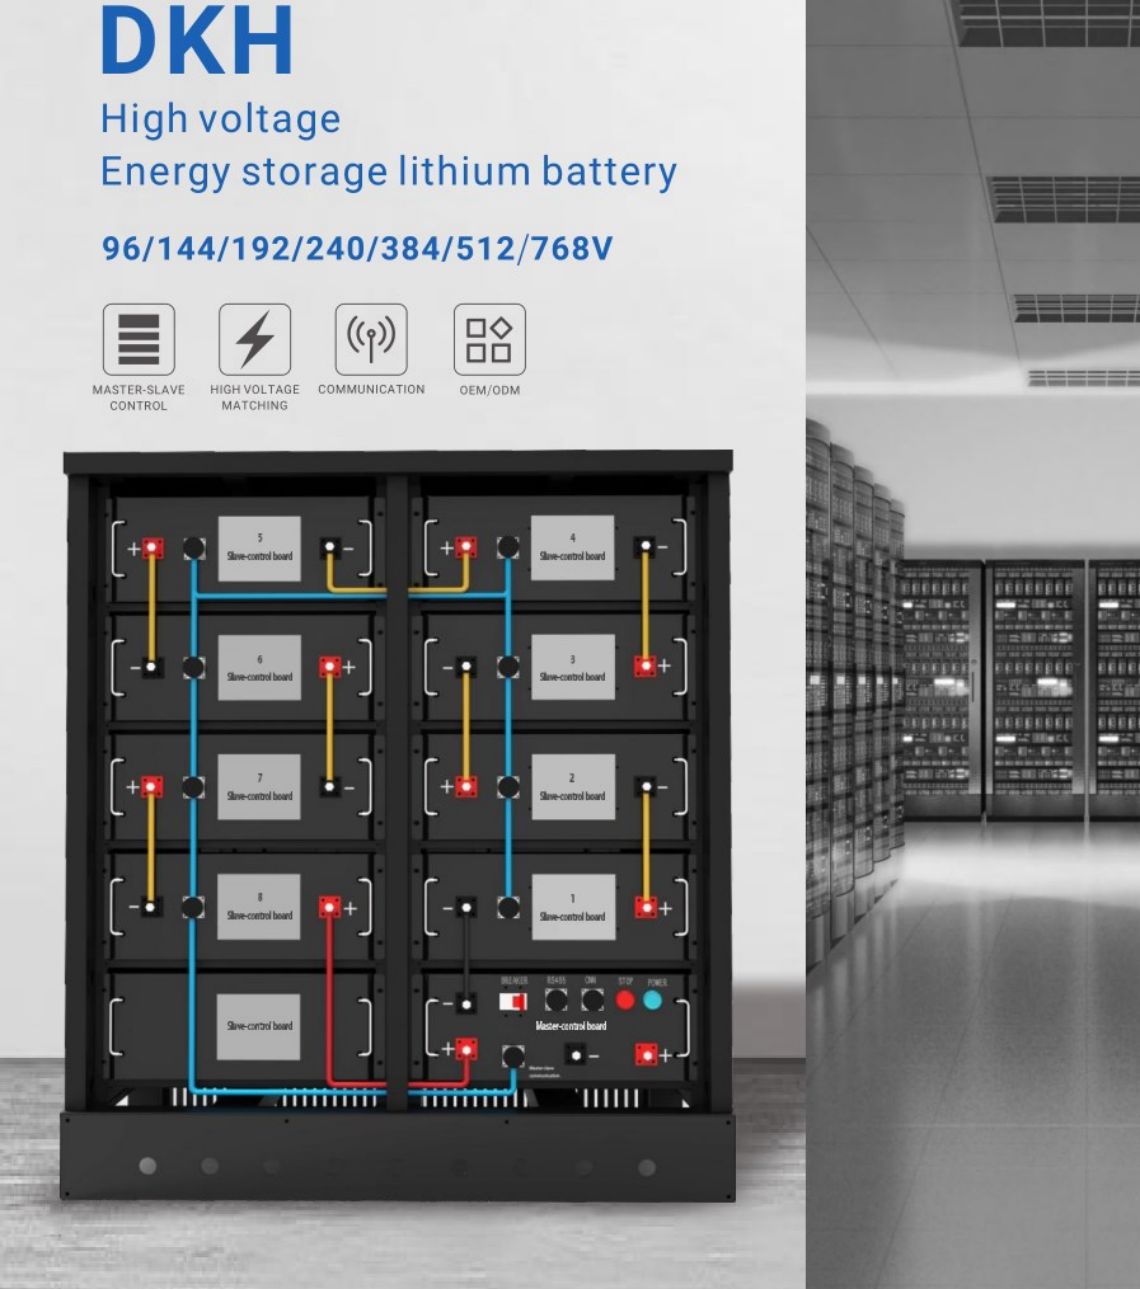 Héichspannungsenergielagerung Lithium Batterie System